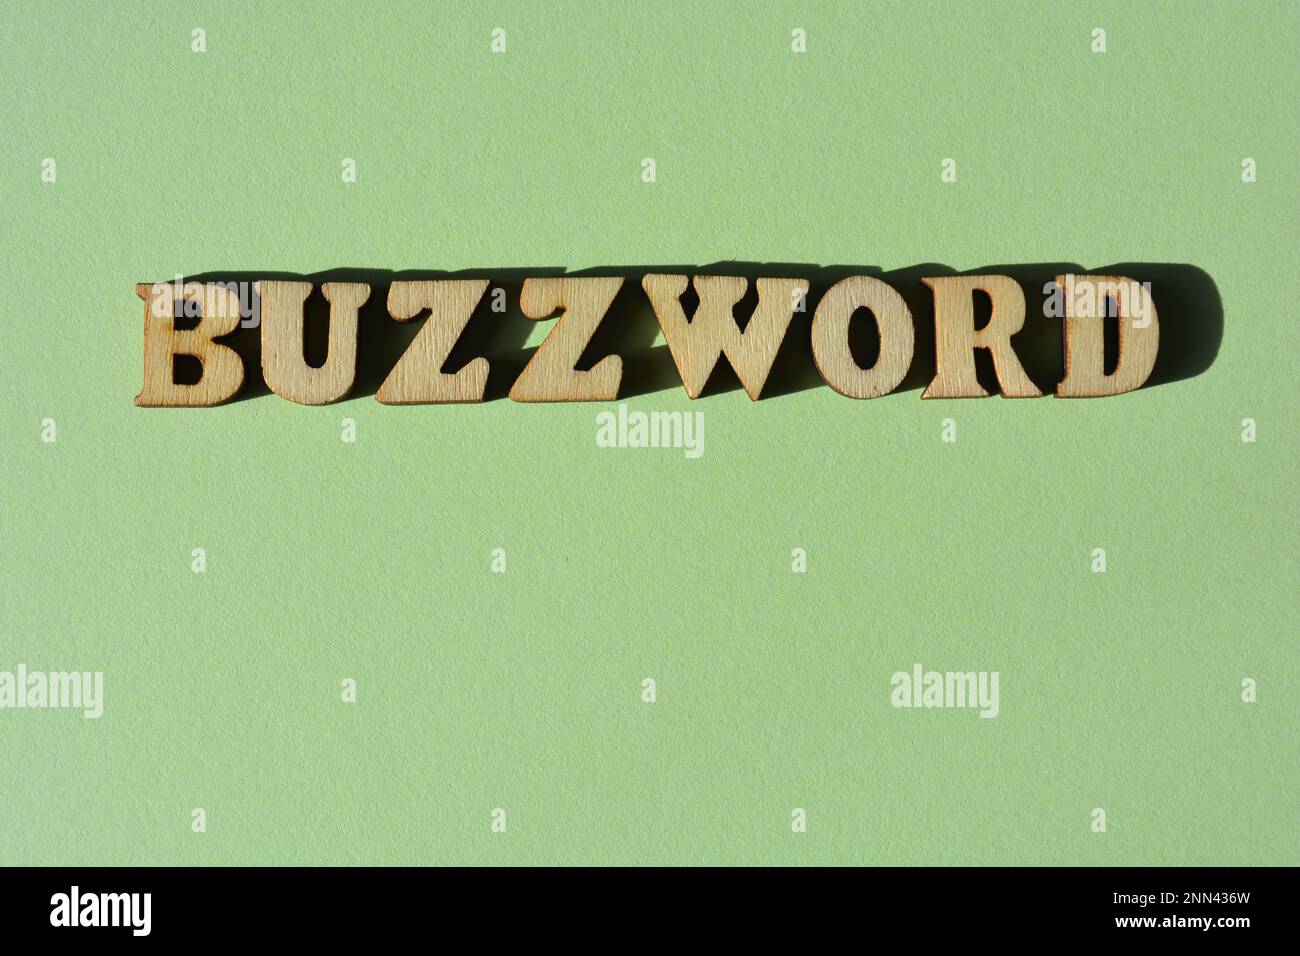 Buzzword, Wort in hölzernen Buchstaben isoliert auf grünem Hintergrund Stockfoto